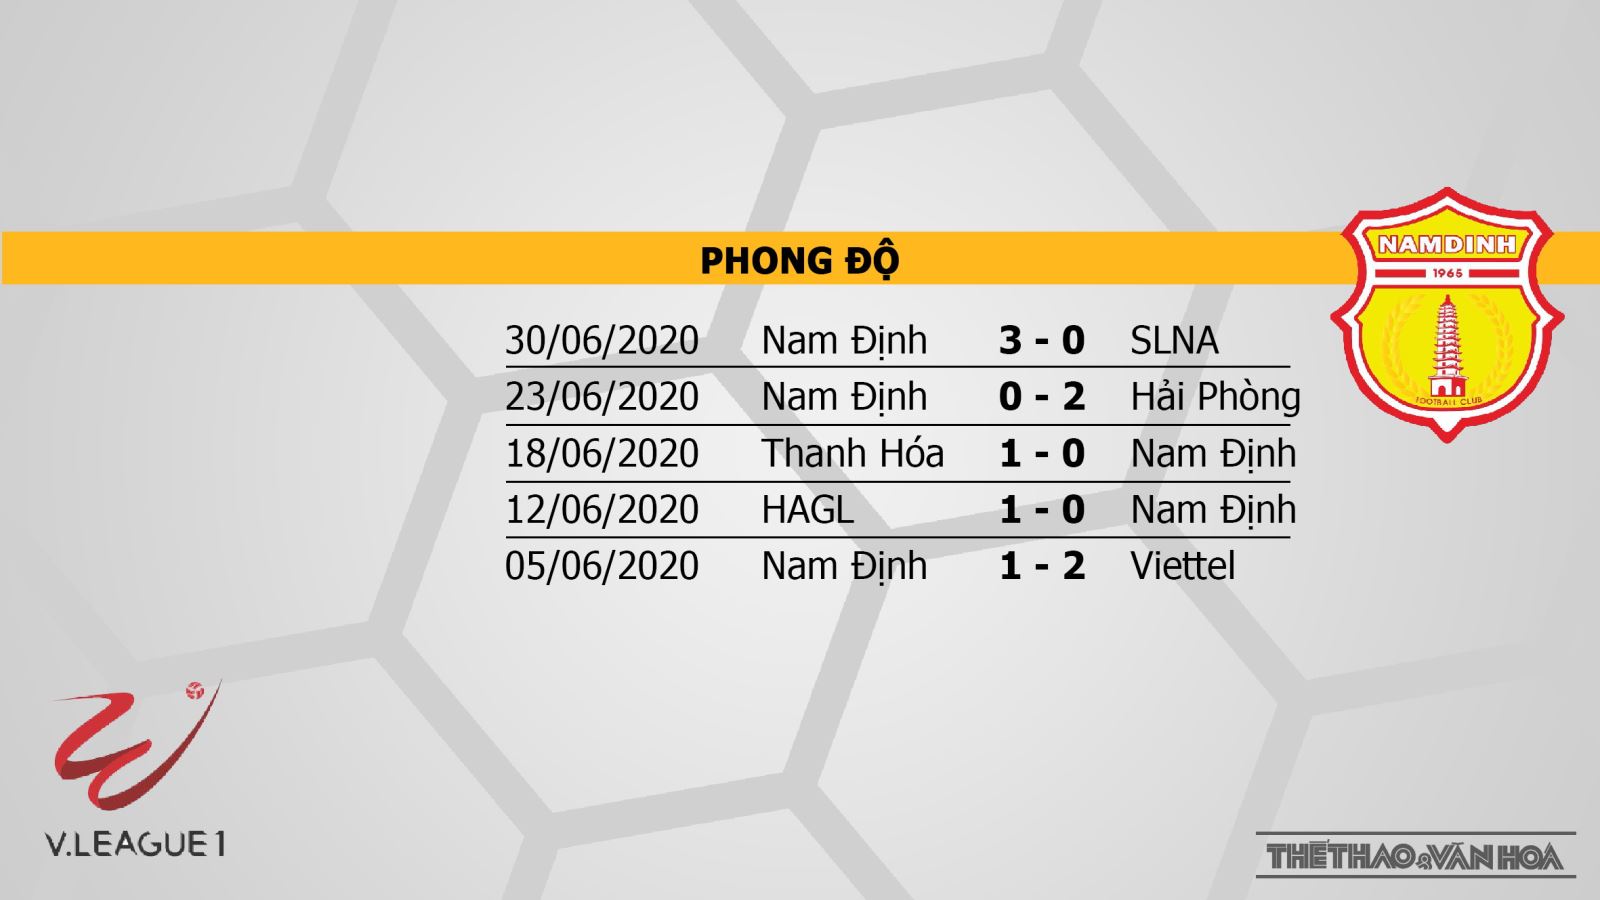 Keo nha cai, nhận định kết quả, Than Quảng Ninh vs Nam Định, BĐTV, Trực tiếp bóng đá V-League 2020, trực tiếp bóng đá Việt Nam, trực tiếp Quảng Ninh đấu với Nam Định